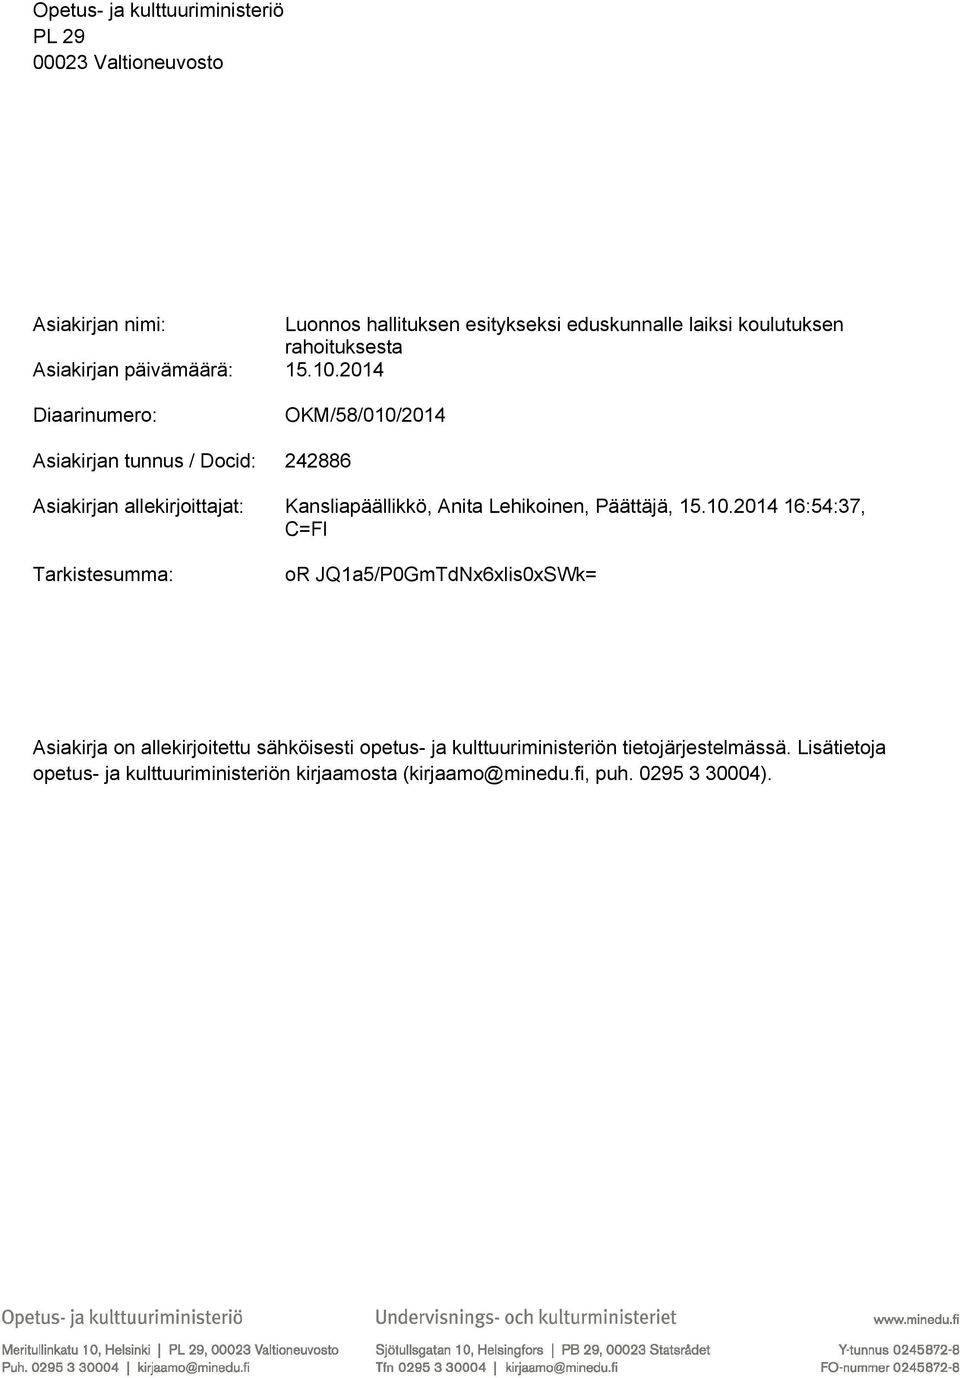 2014 Diaarinumero: OKM/58/010/2014 Asiakirjan tunnus / Docid: 242886 Asiakirjan allekirjoittajat: Kansliapäällikkö, Anita Lehikoinen, Päättäjä, 15.